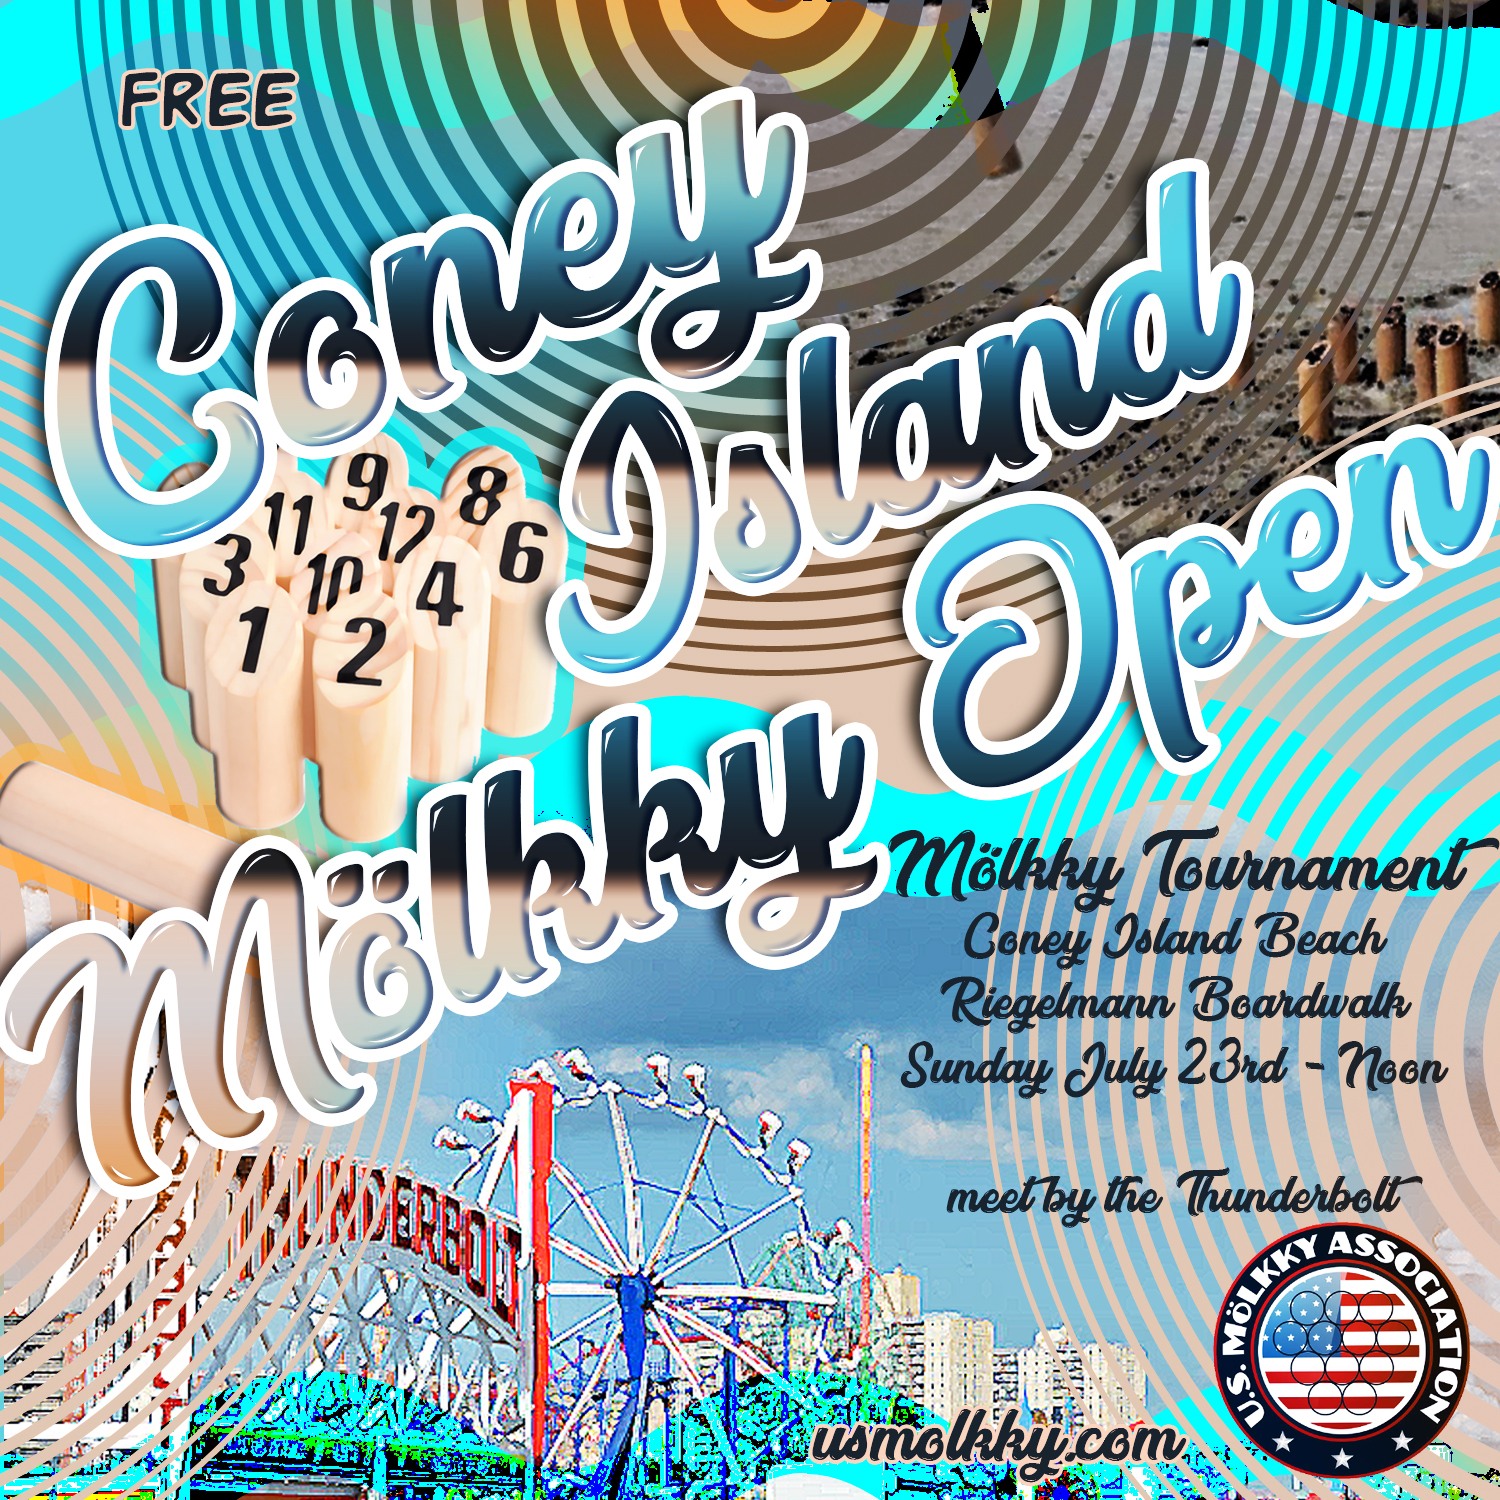 Coney Island Open